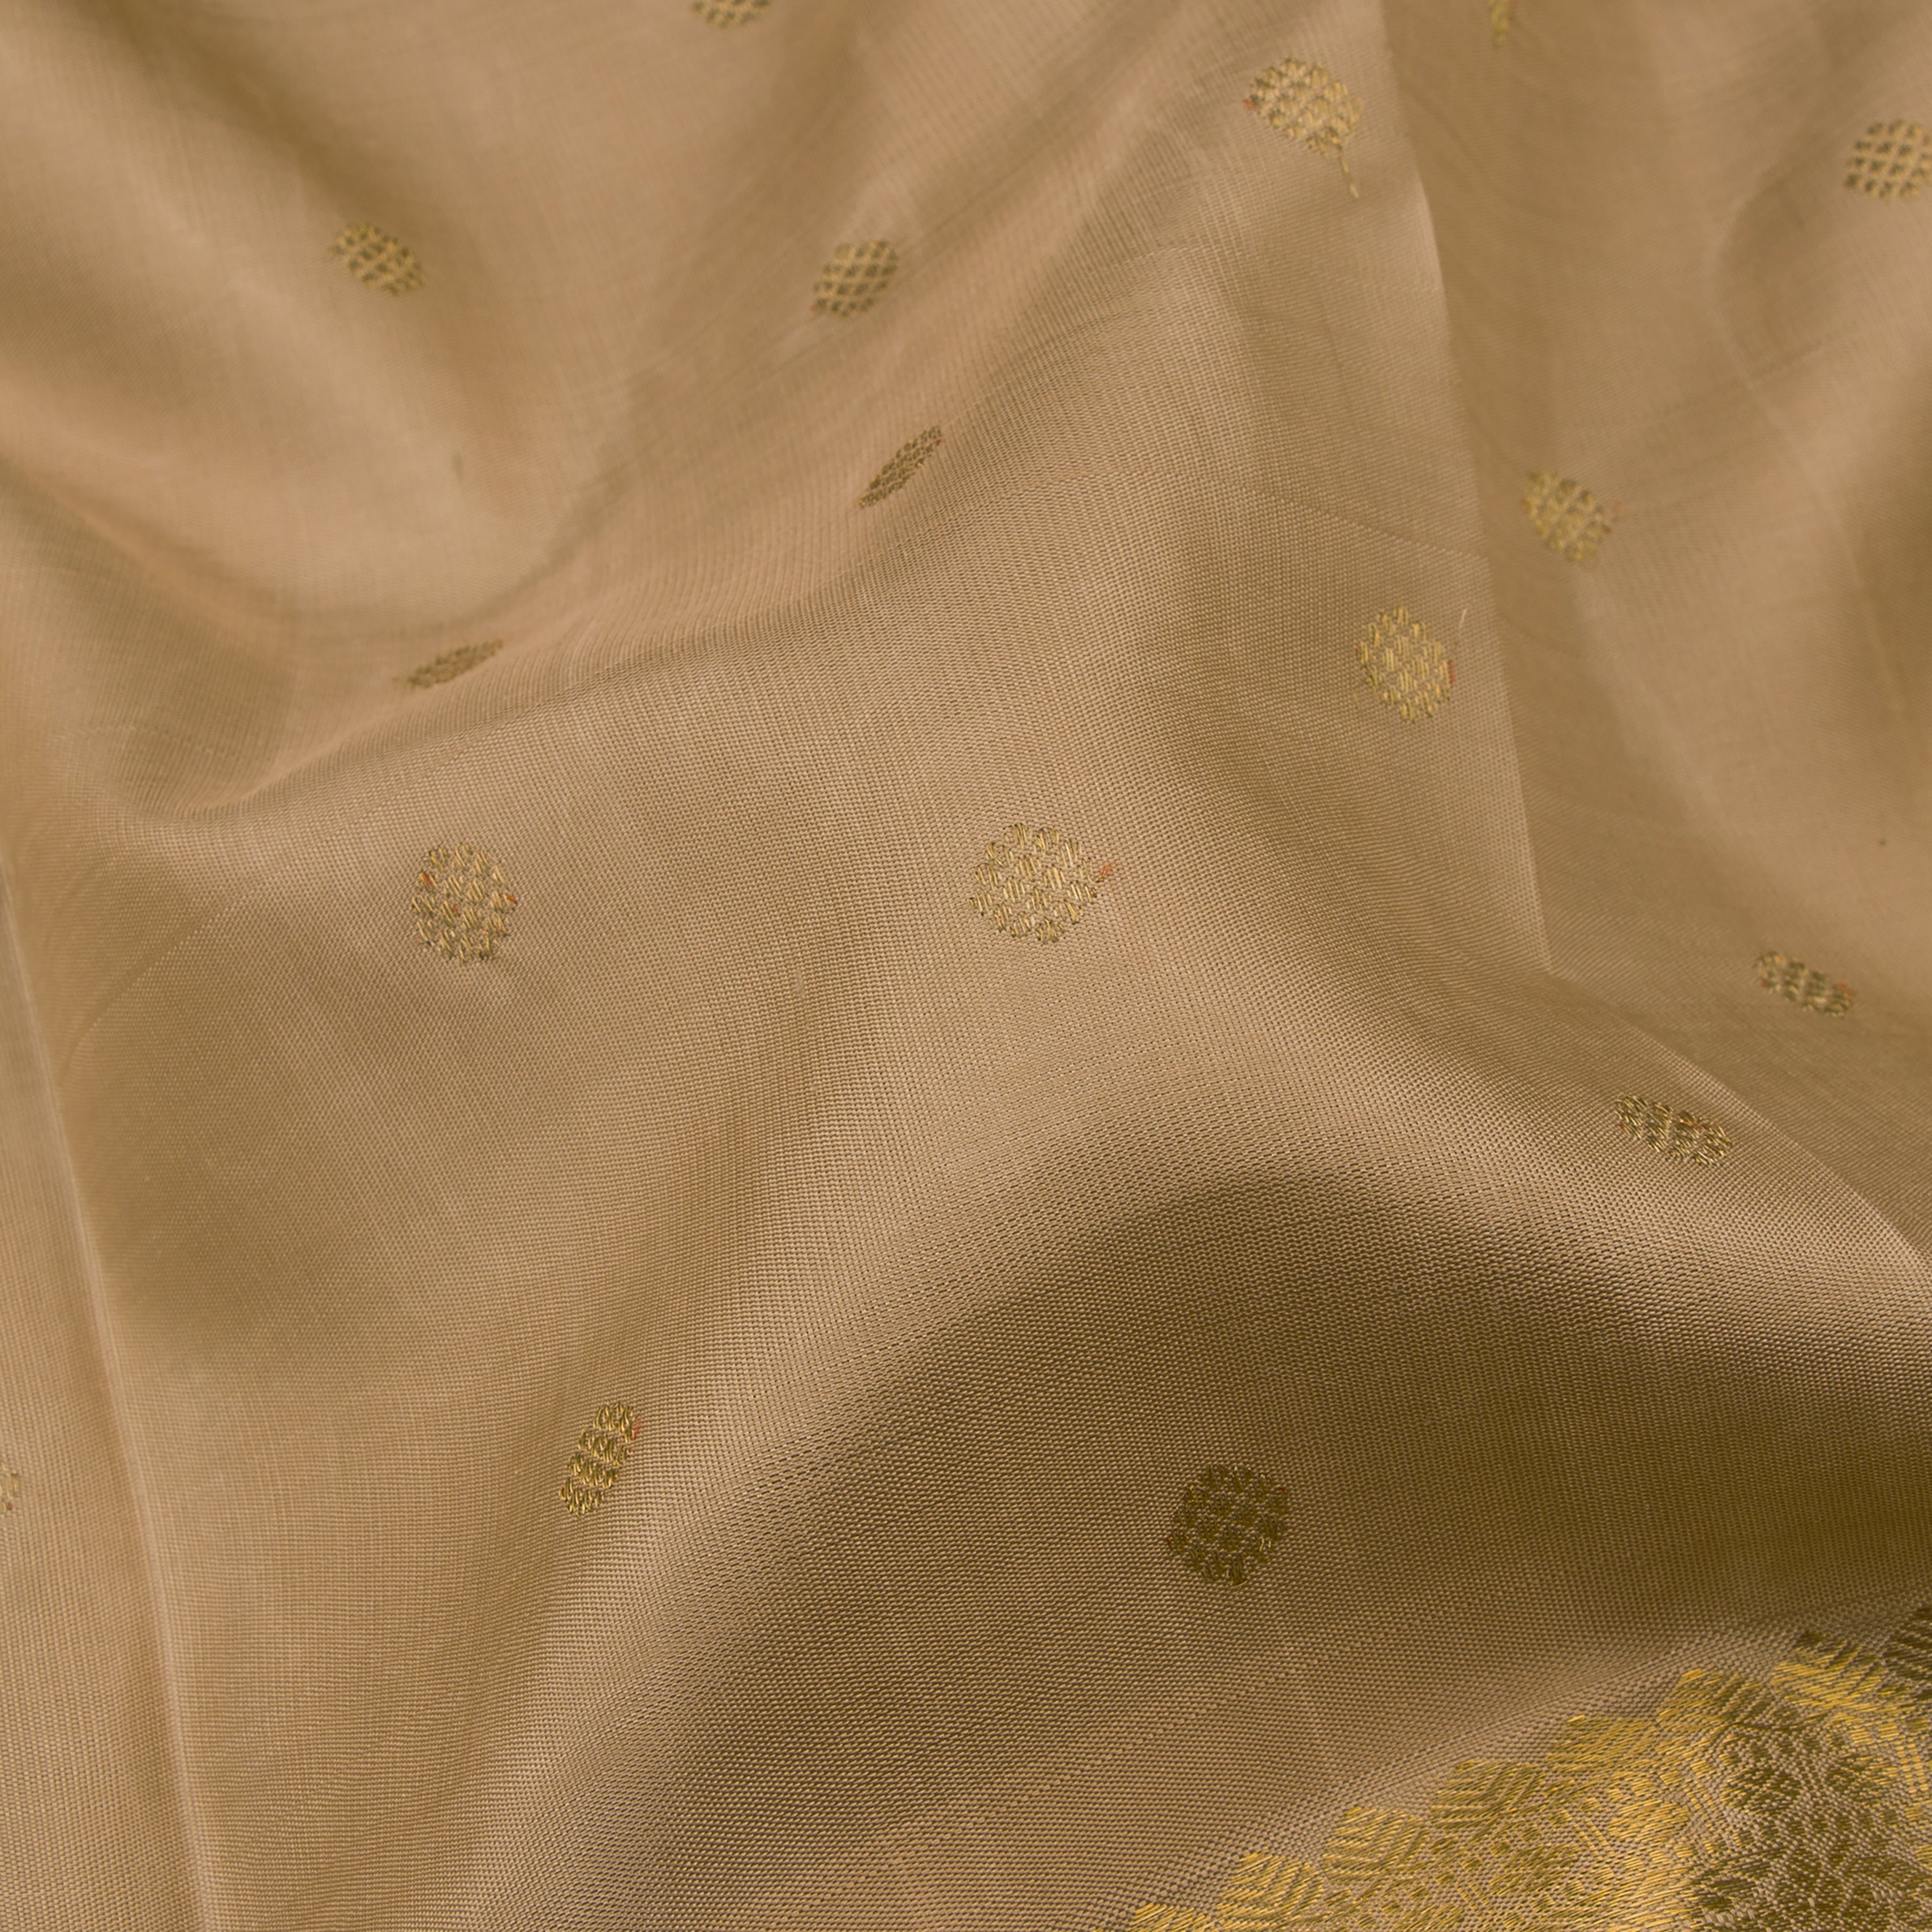 Kanakavalli Kanjivaram Silk Sari 22-110-HS001-08544 - Fabric View